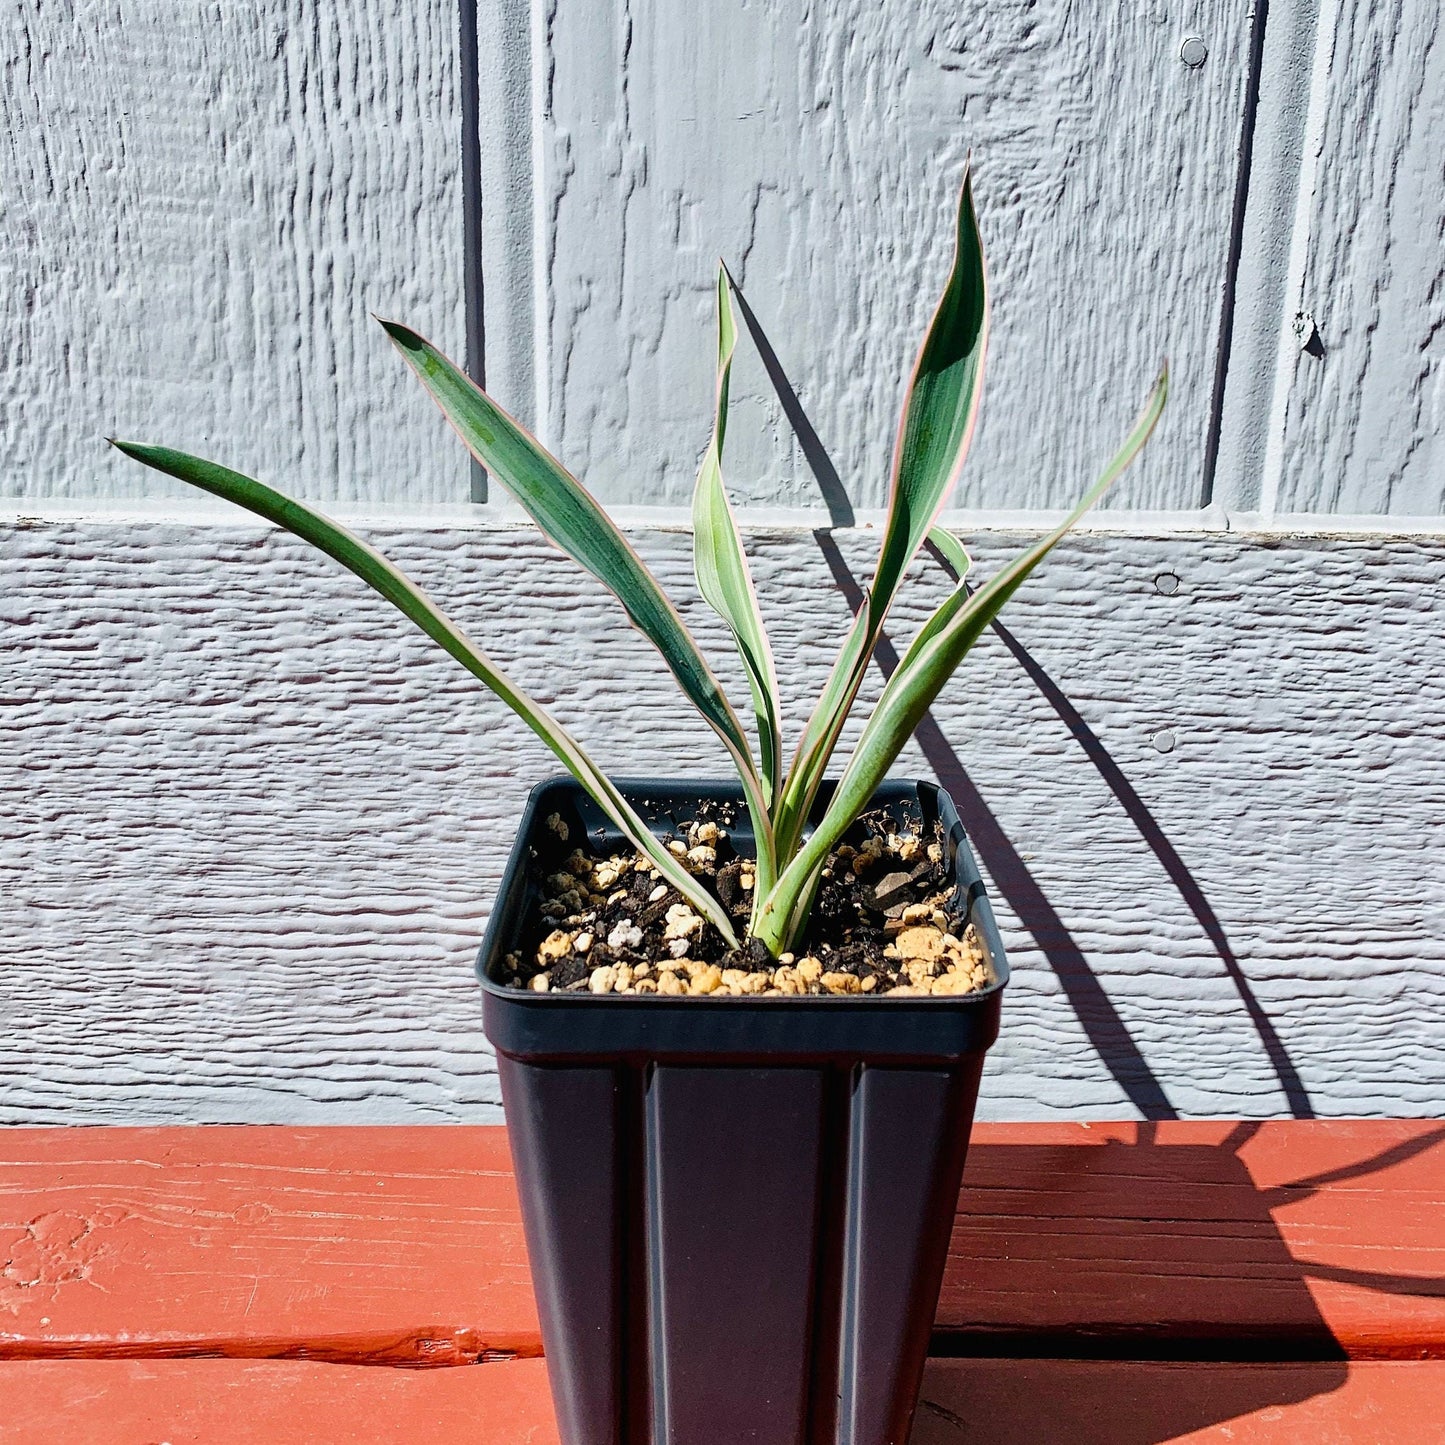 Yucca gloriosa 'Variegata' Spanish Dagger COLD HARDY